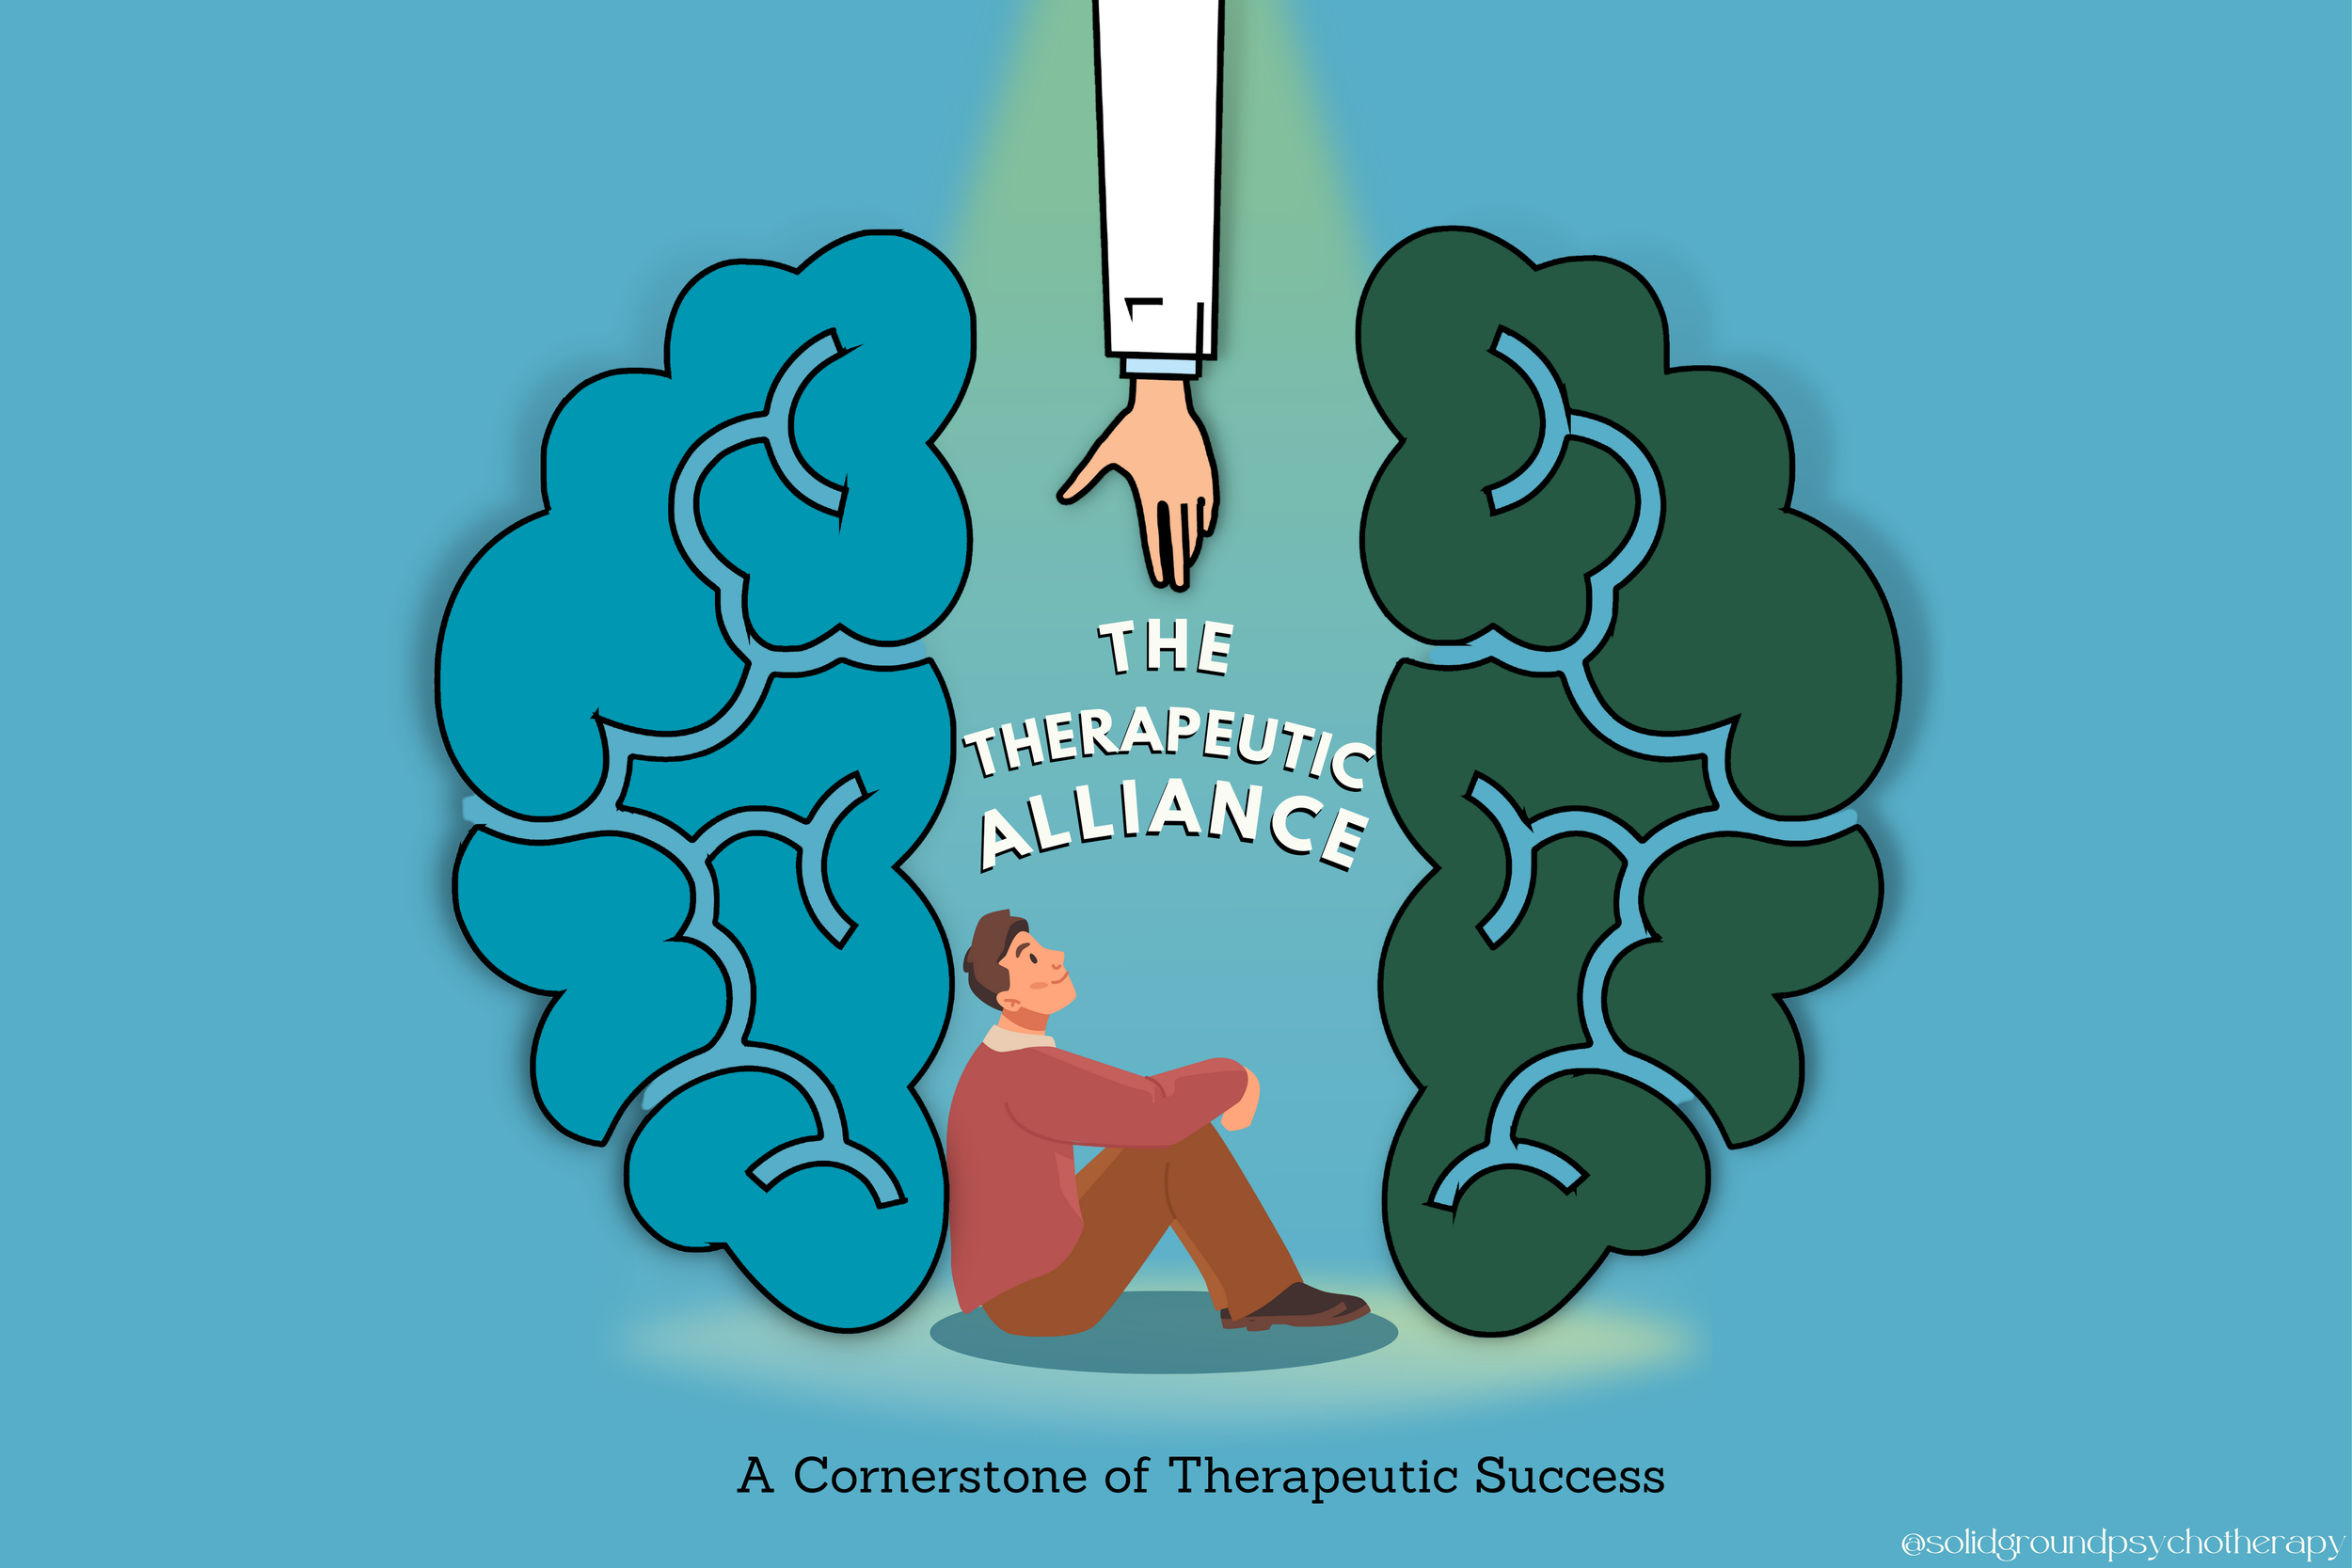 The Therapeutic Alliance: The Cornerstone of Therapeutic Success